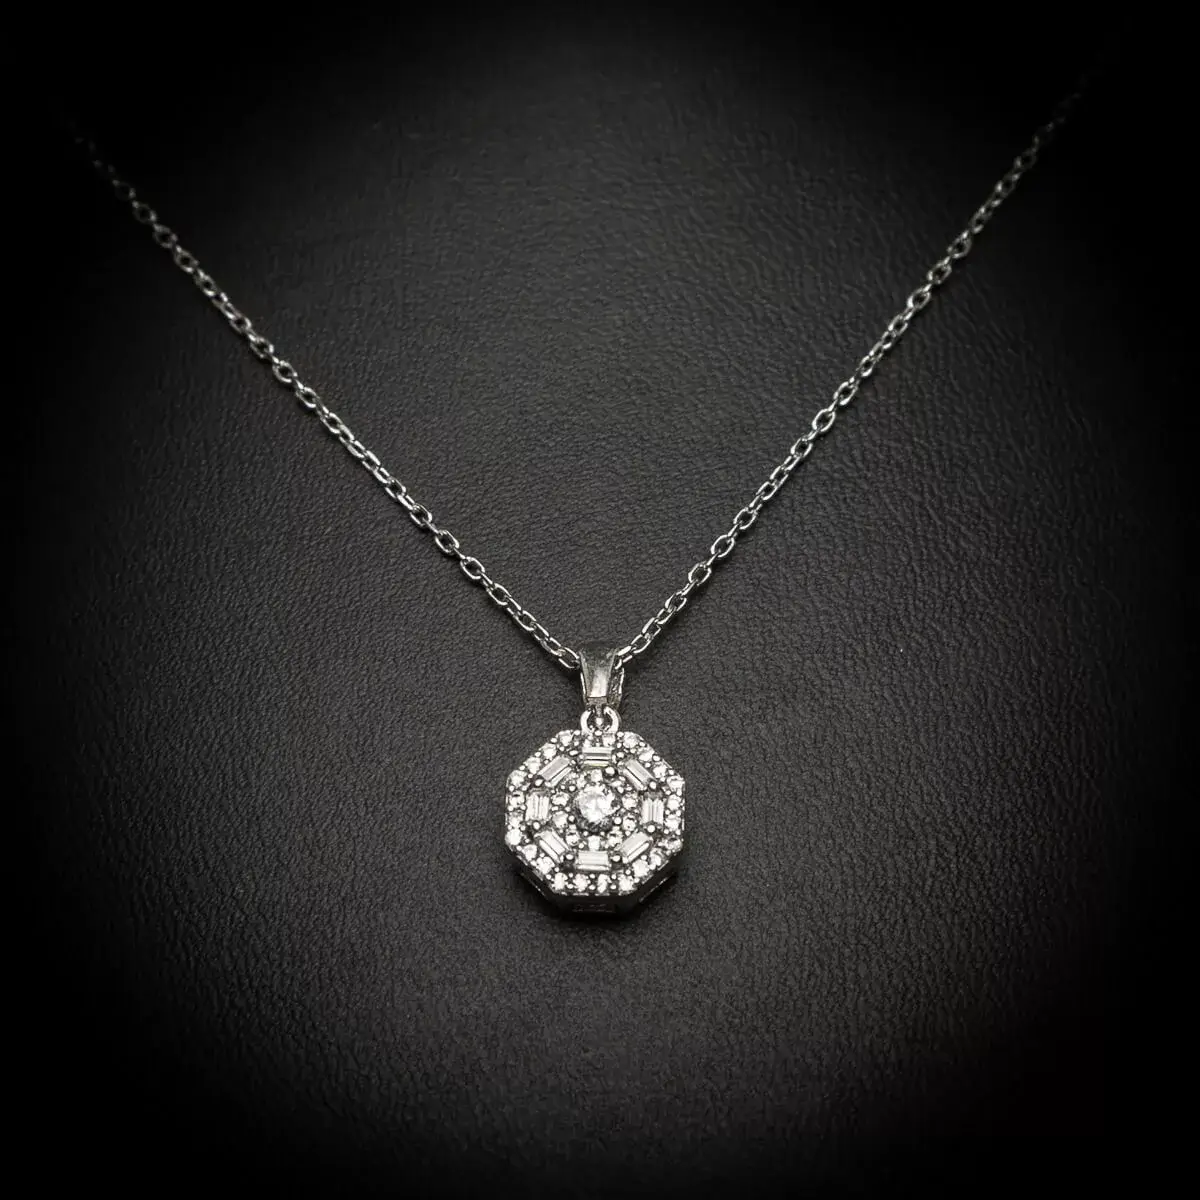 Ova prefinjena ogrlica od 925 srebra ima osmougaoni privezak koji blista zahvaljujući besprekorno postavljenim cirkonima. Svaki ugao ovog oktagona sjaji poput dijamanata, čineći je izuzetno elegantnom i privlačnom.